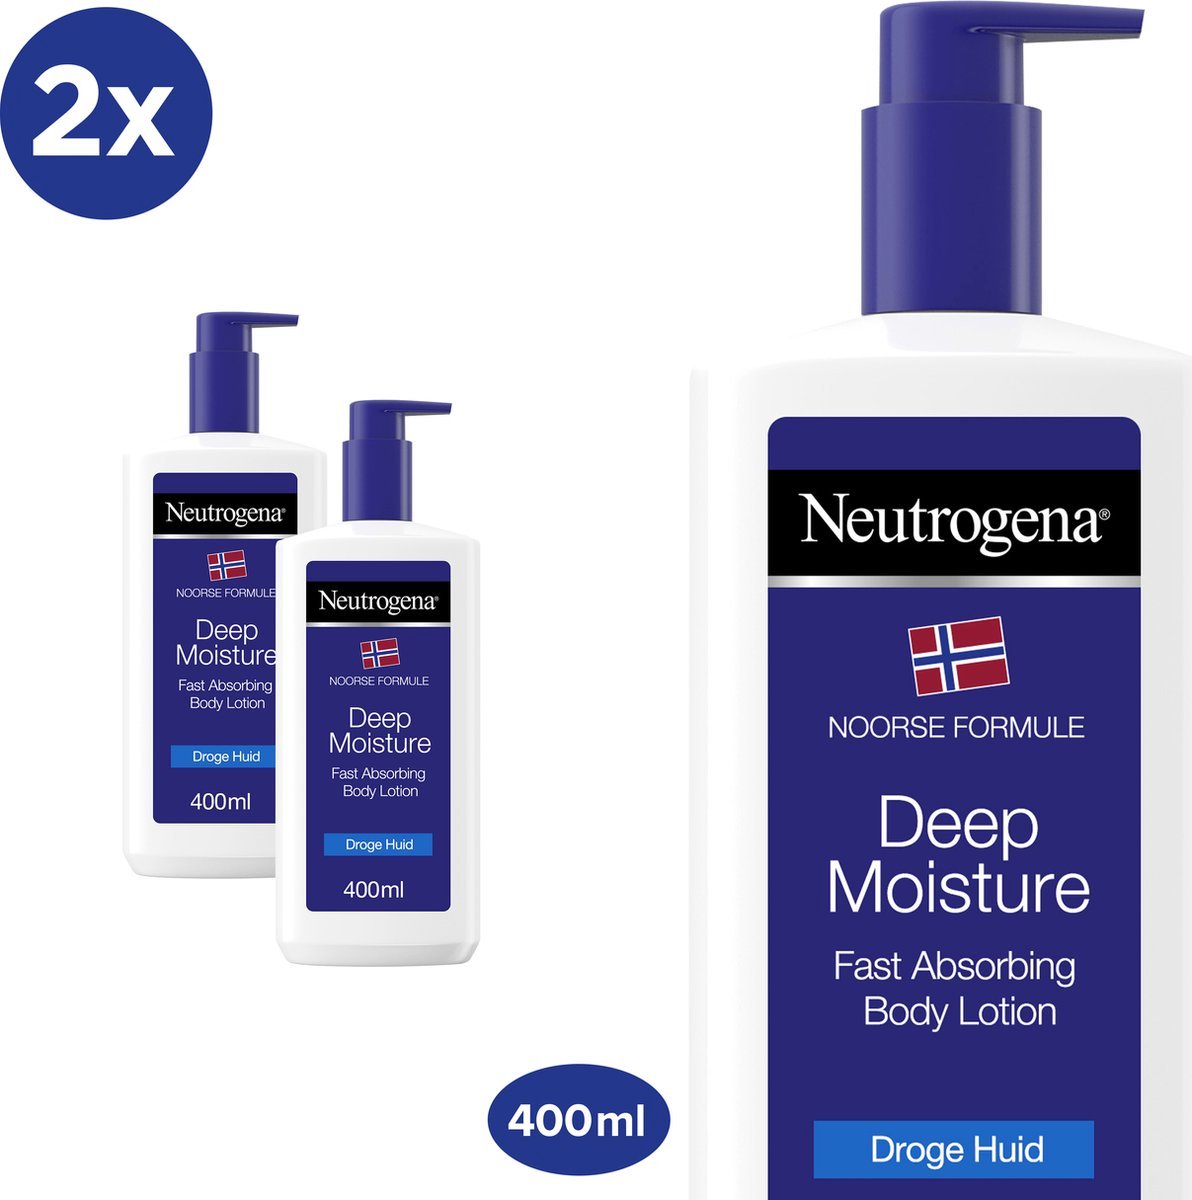 Neutrogena Deep Moisture - Noorse Formule - snel absorberende bodylotion - bodycrème - droge huid - 2 x 400 ml